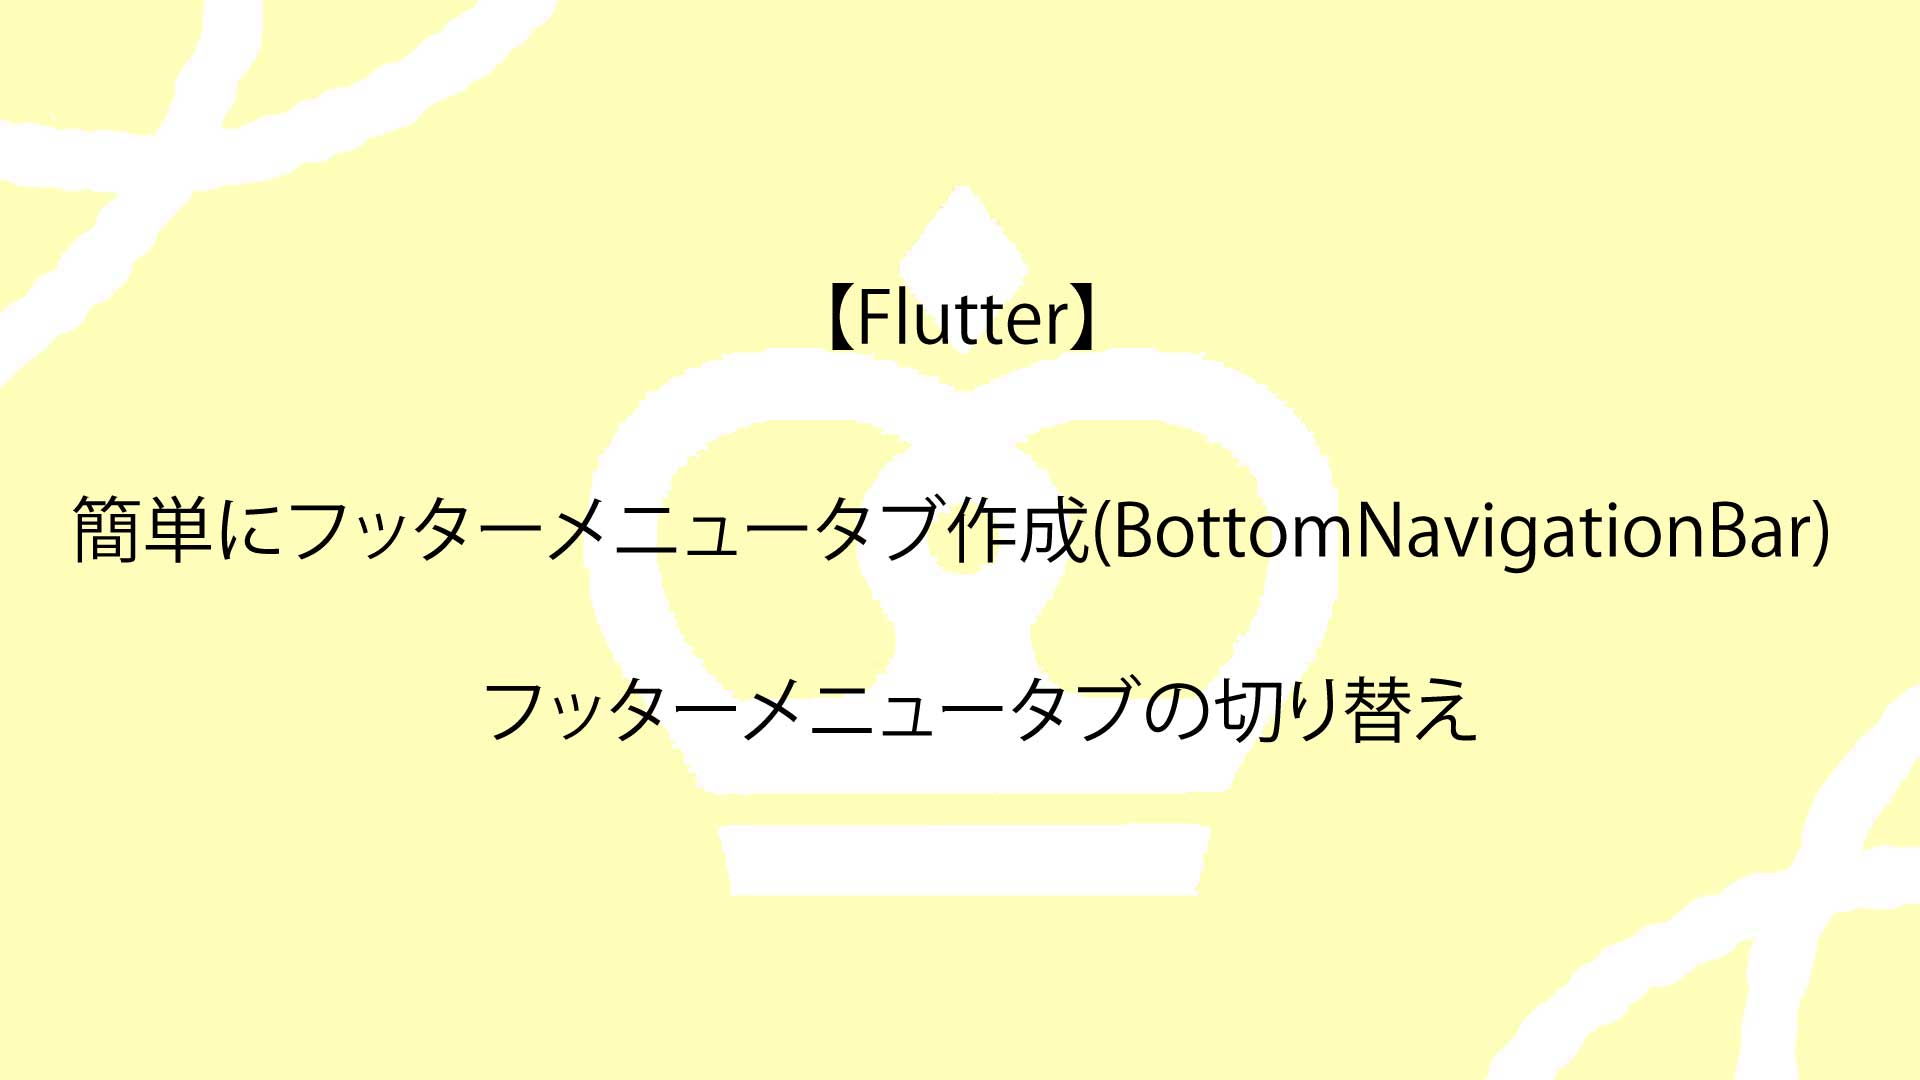 【Flutter】簡単にフッターメニュータブ作成(BottomNavigationBar)し、フッターメニュータブの切り替えを行う方法を解説